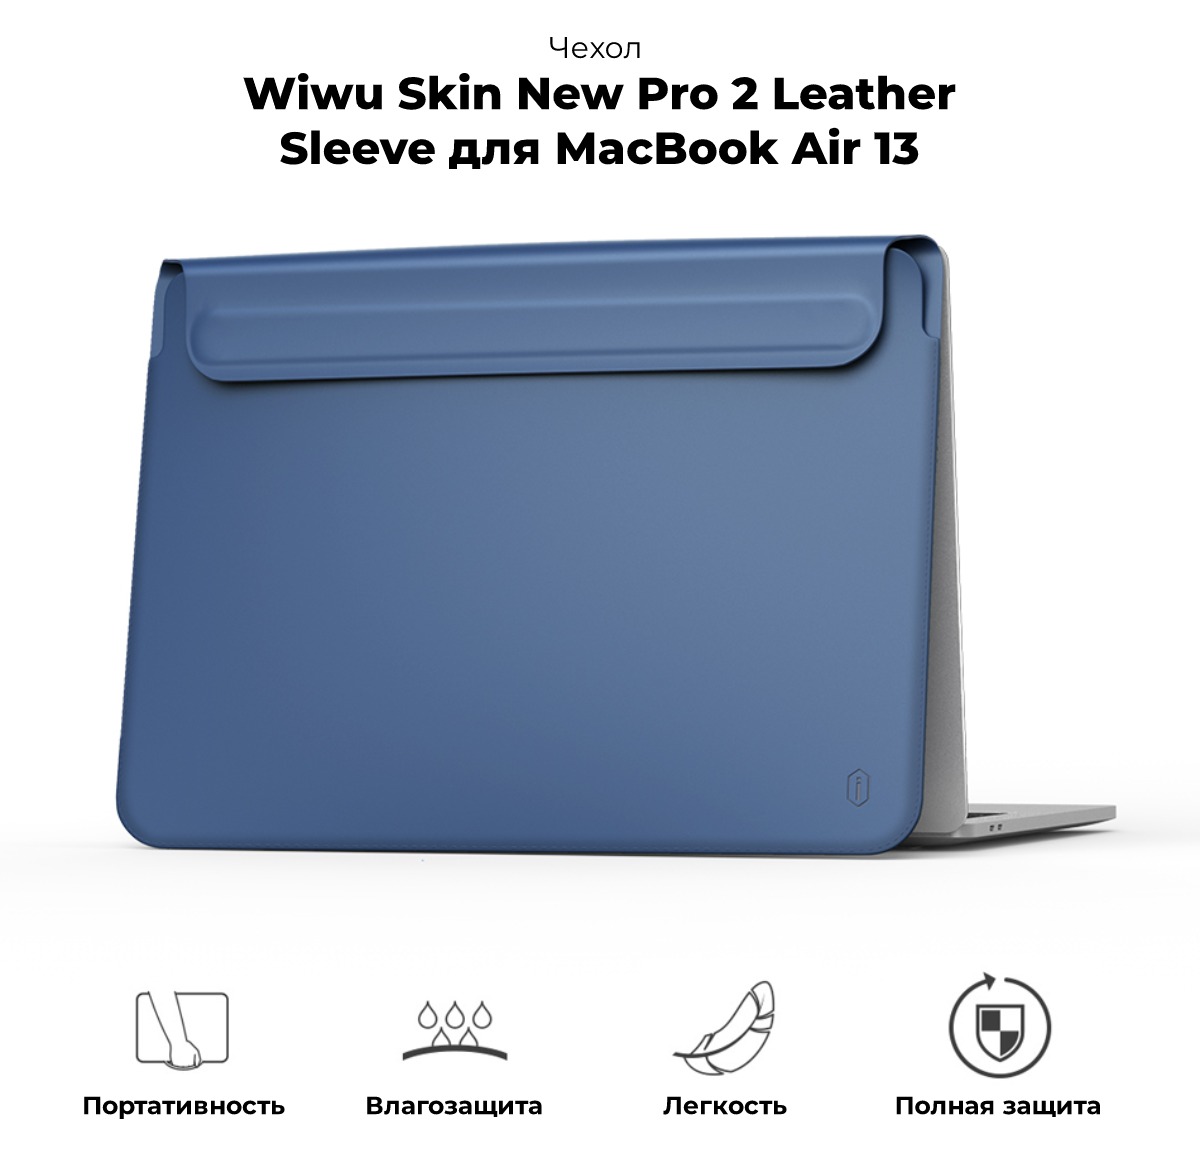 Wiwu-Skin-New-Pro-2-Leather-Sleeve-MacBook-Air-13-01